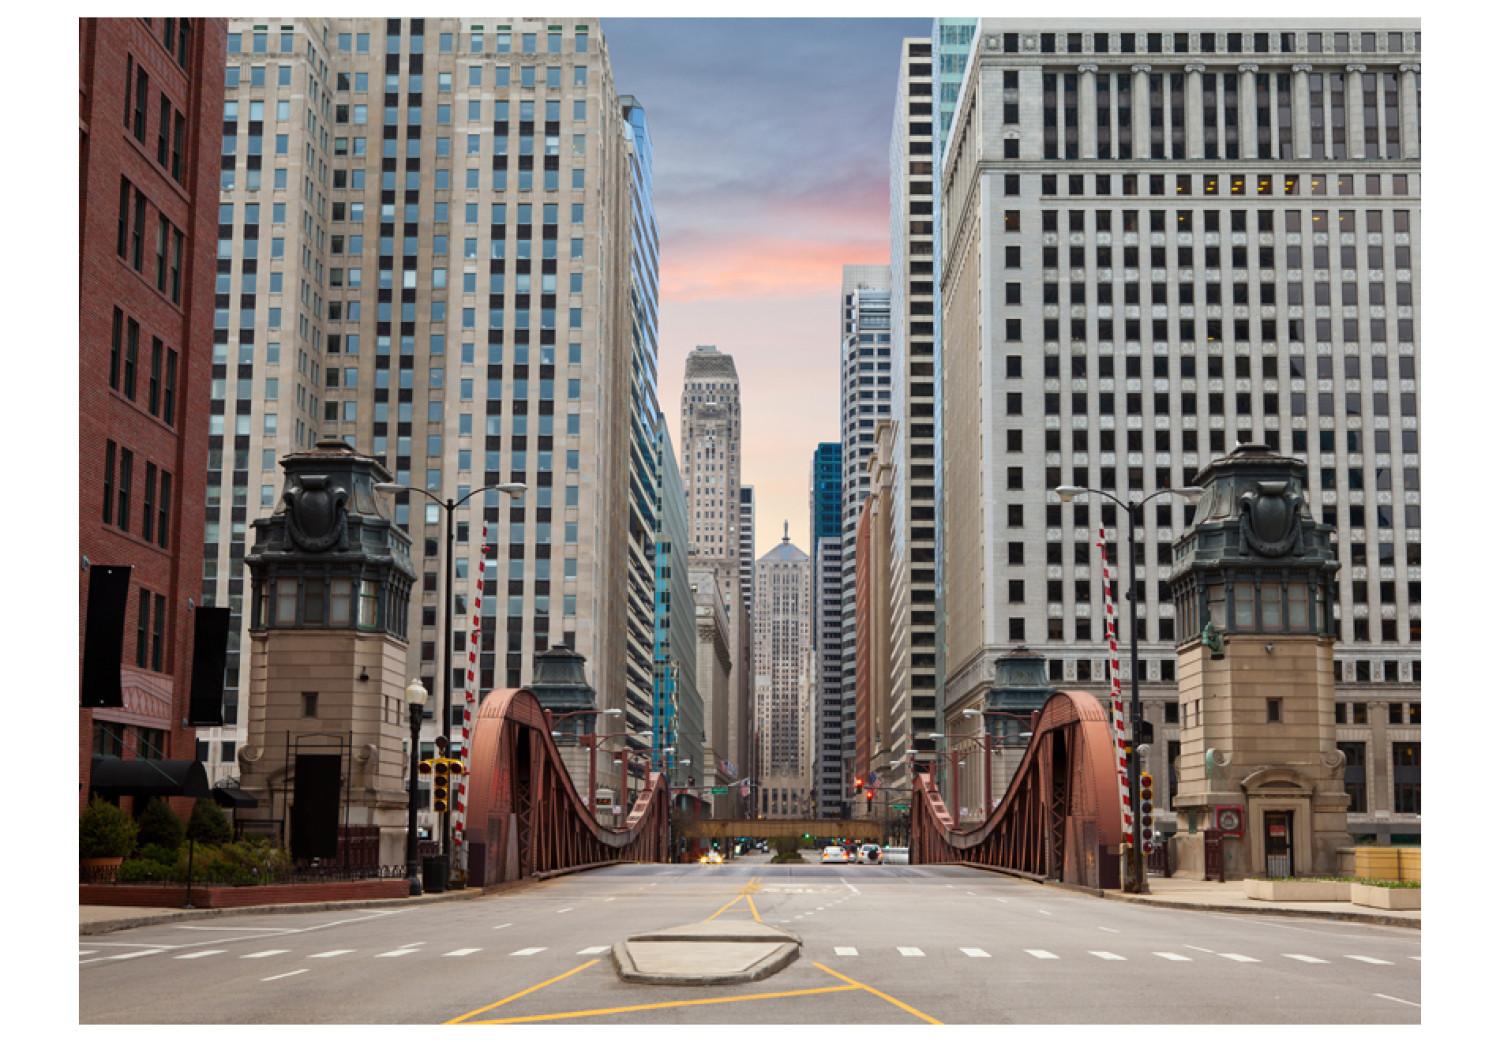 Fotomural a medida Calle en Chicago - vista al puente y a los rascacielos de la ciudad americana